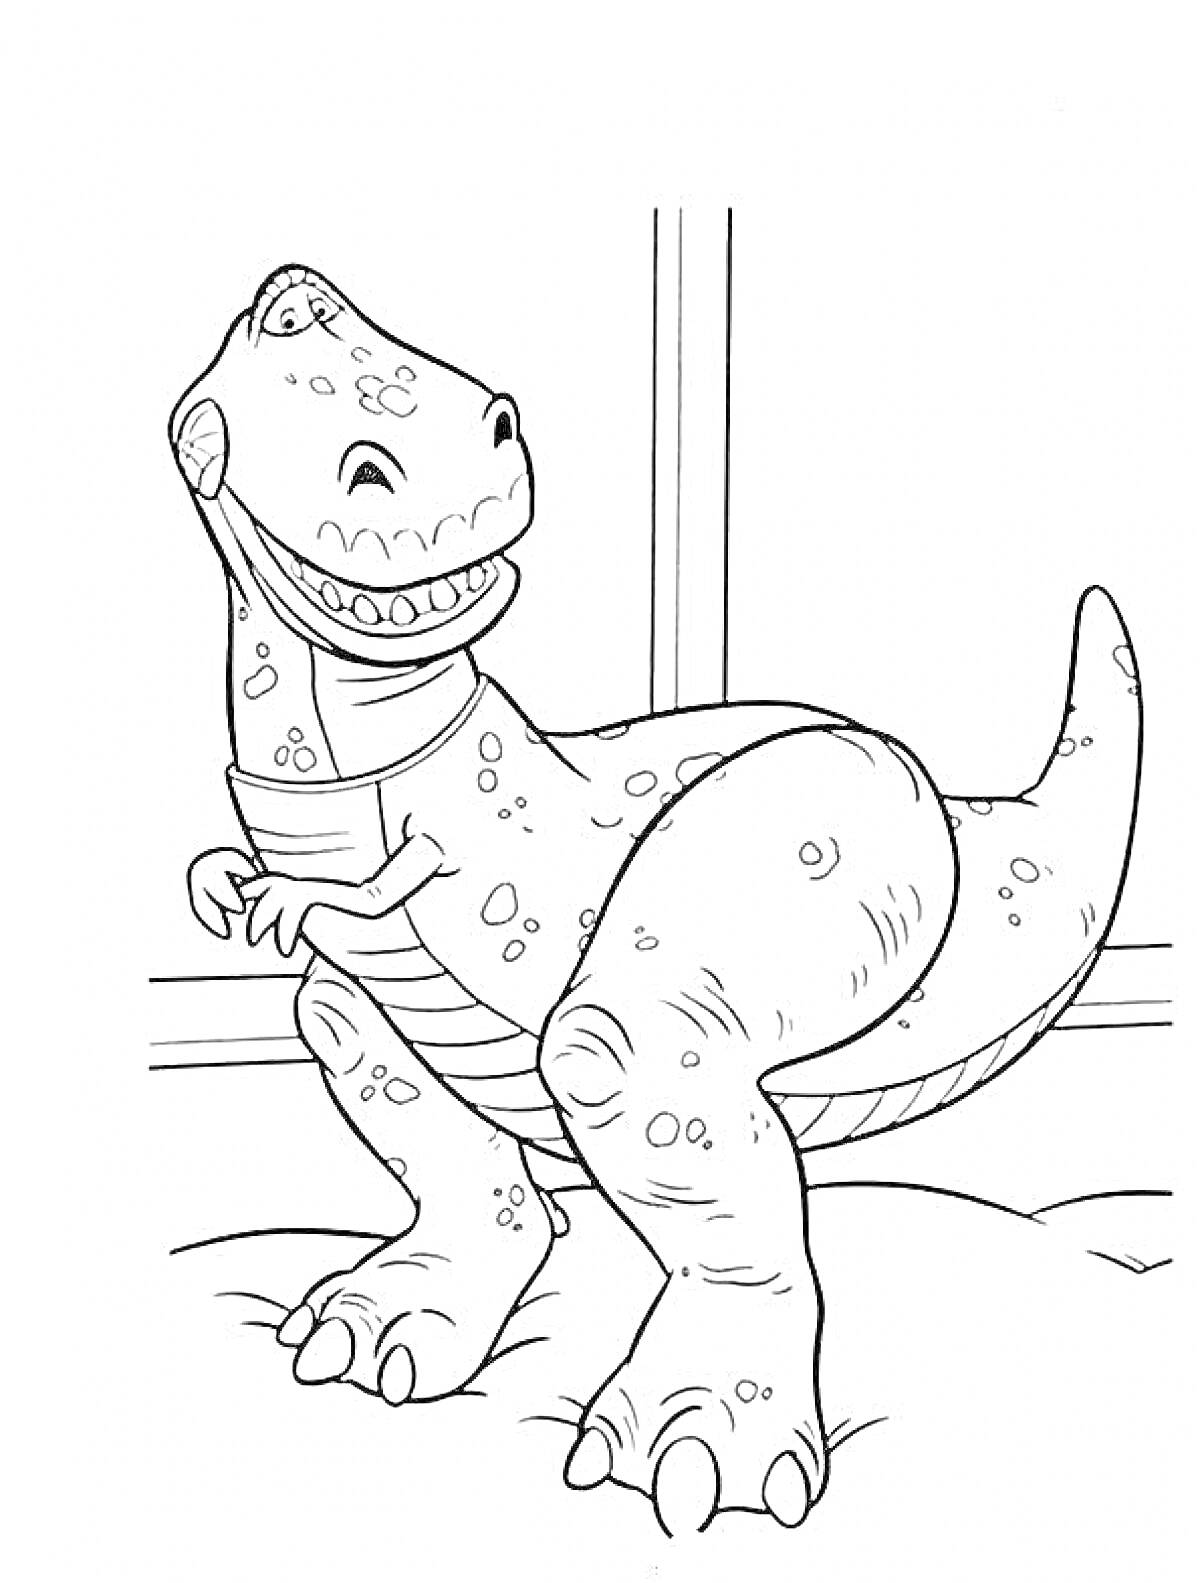 динозавр с механическим ошейником, стоящий на покрывале в комнате